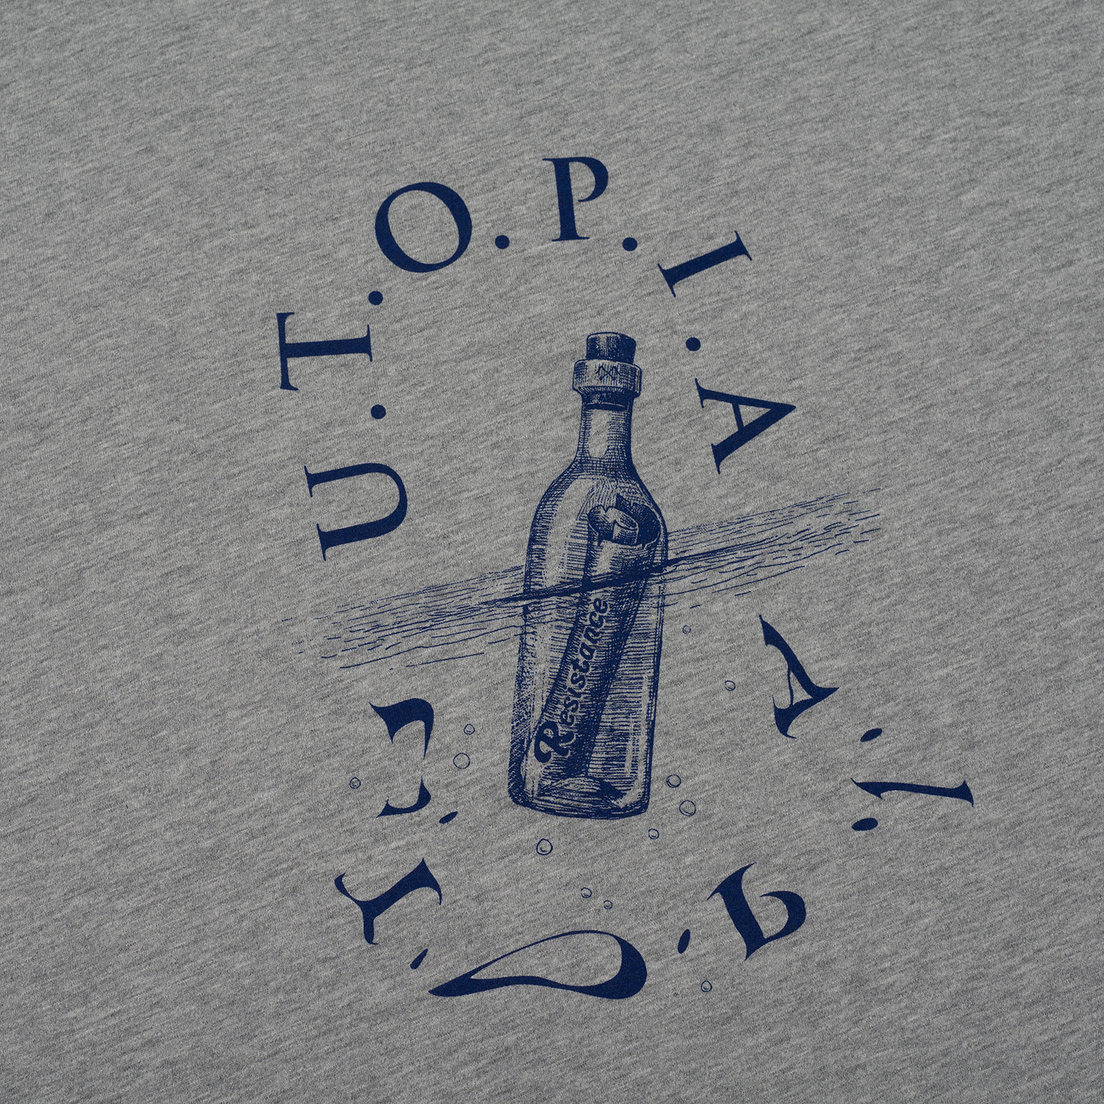 Bleu De Paname Мужская футболка Utopia Moll